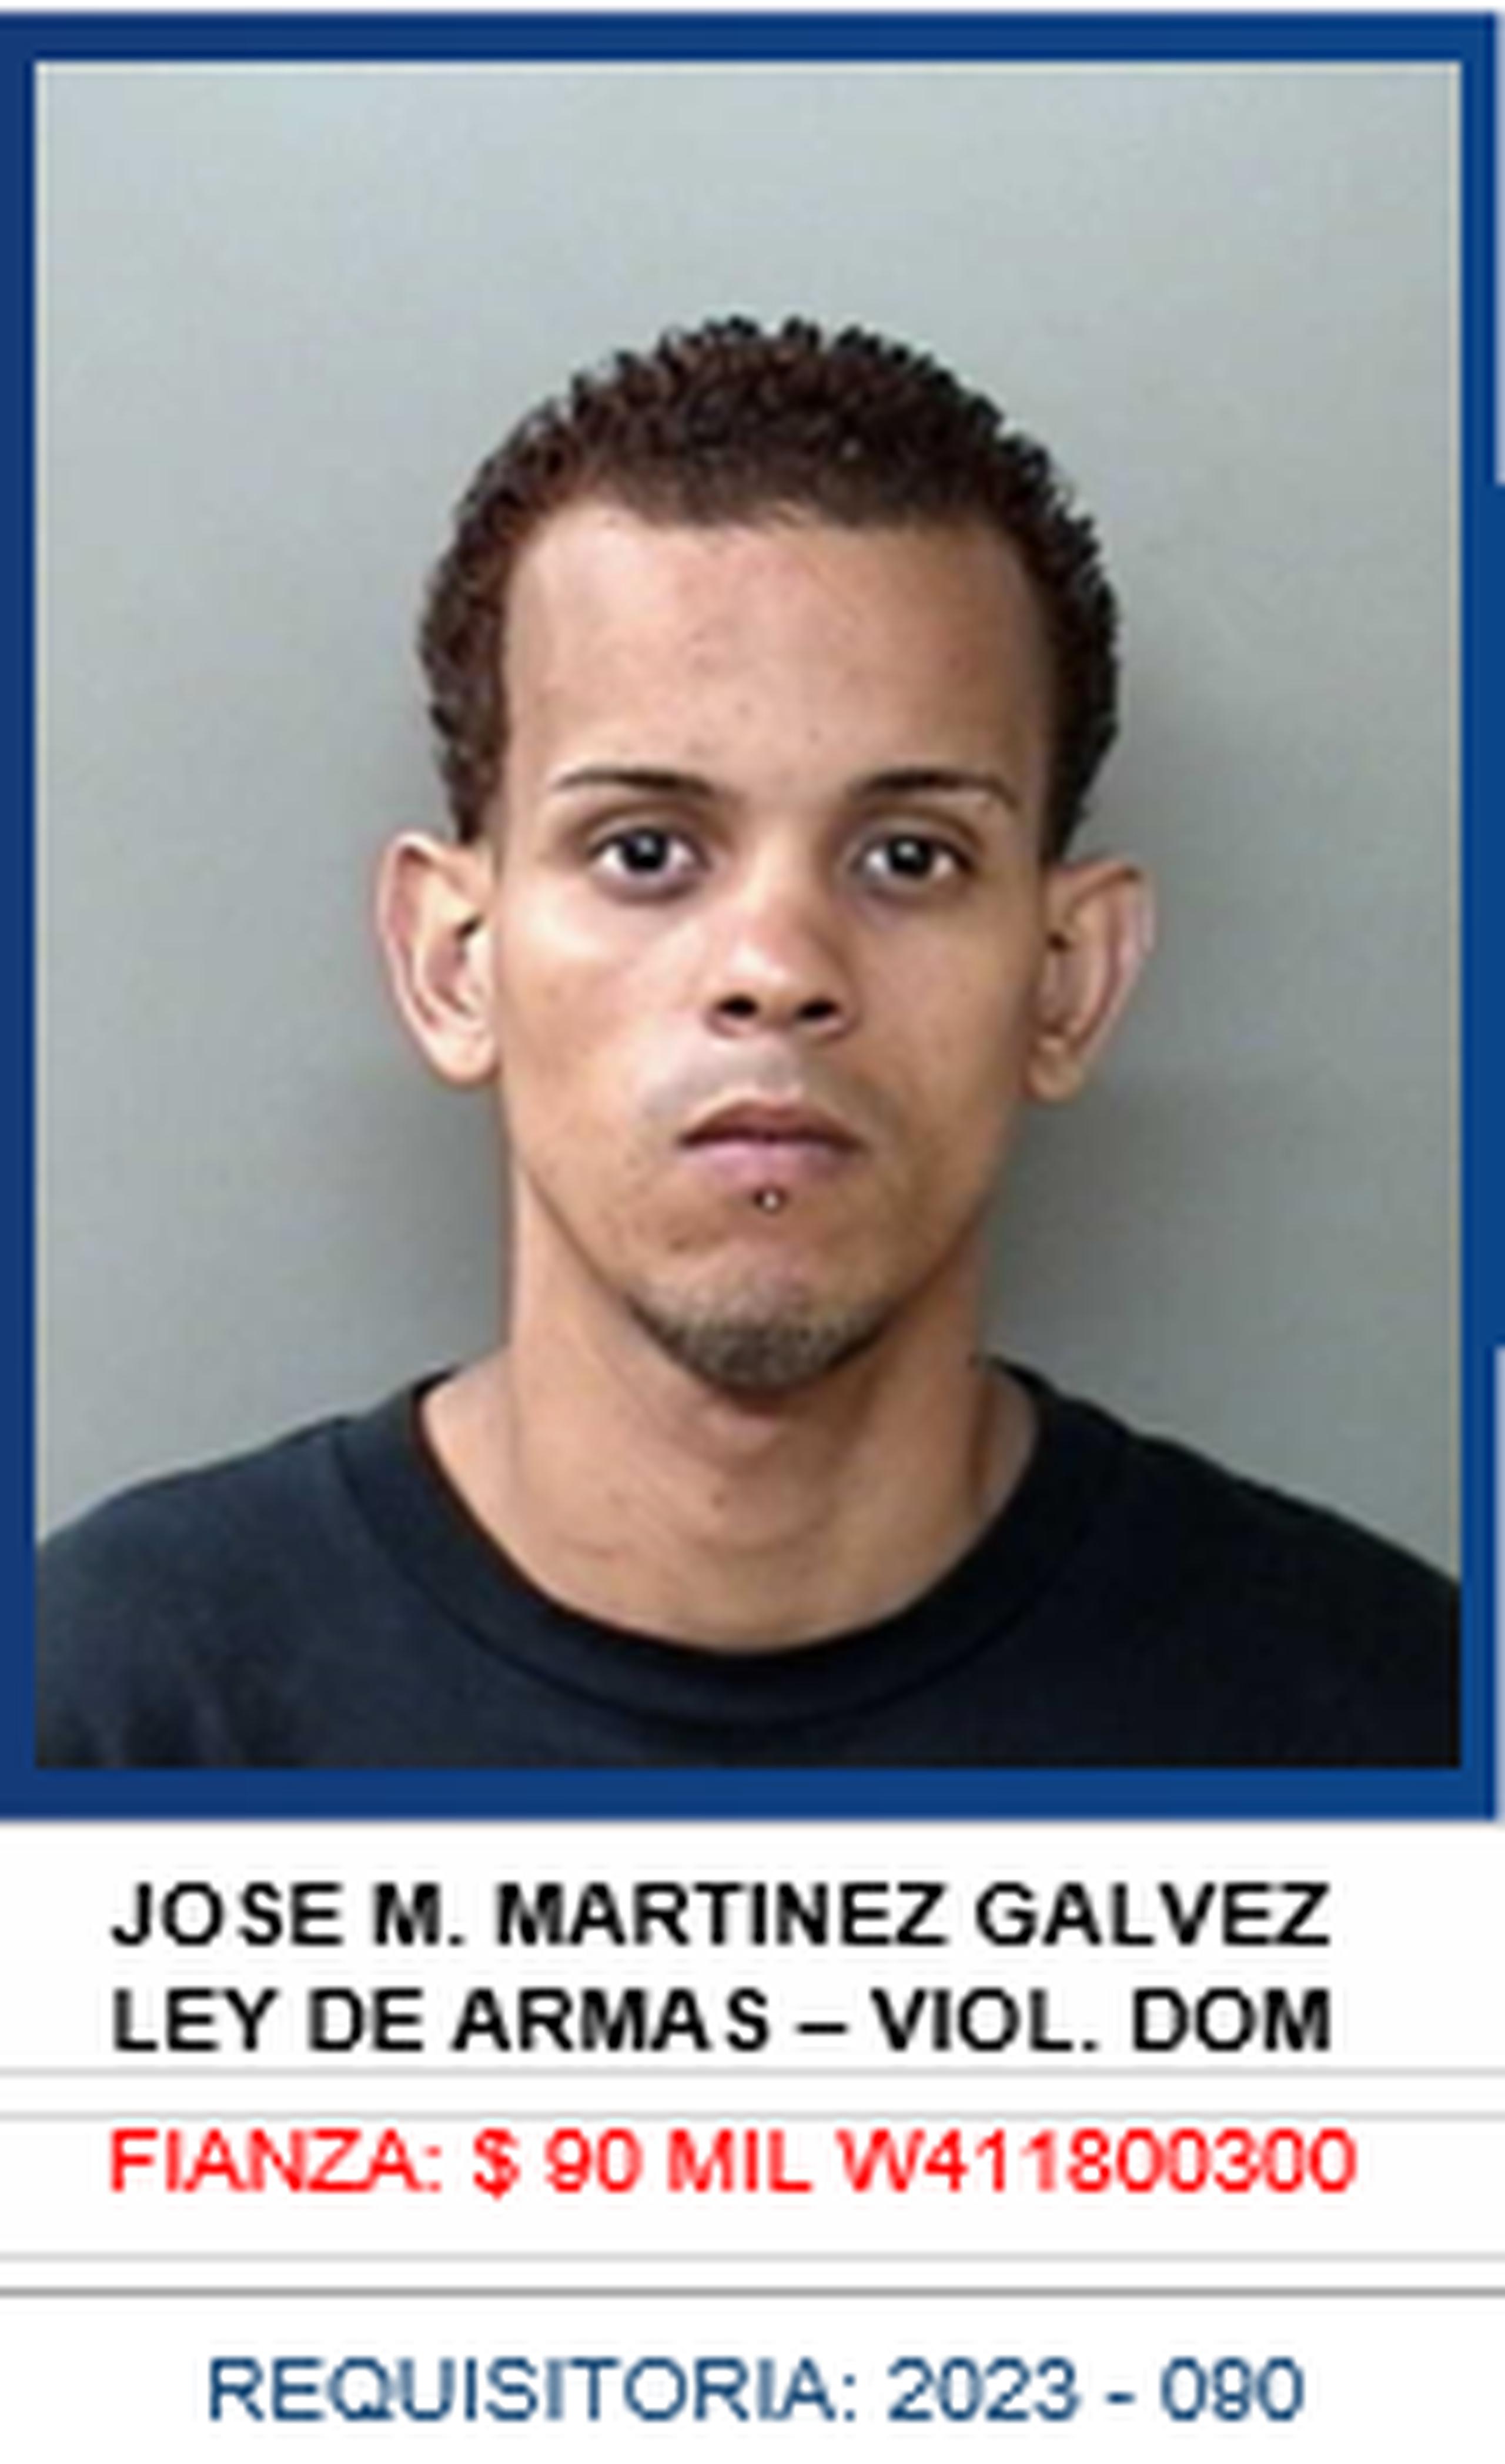 José M. Martínez Galvez enfrentaba a nivel federal una orden de arresto con una fianza de $90,000 y otra orden de arresto a nivel federal por narcotráfico.